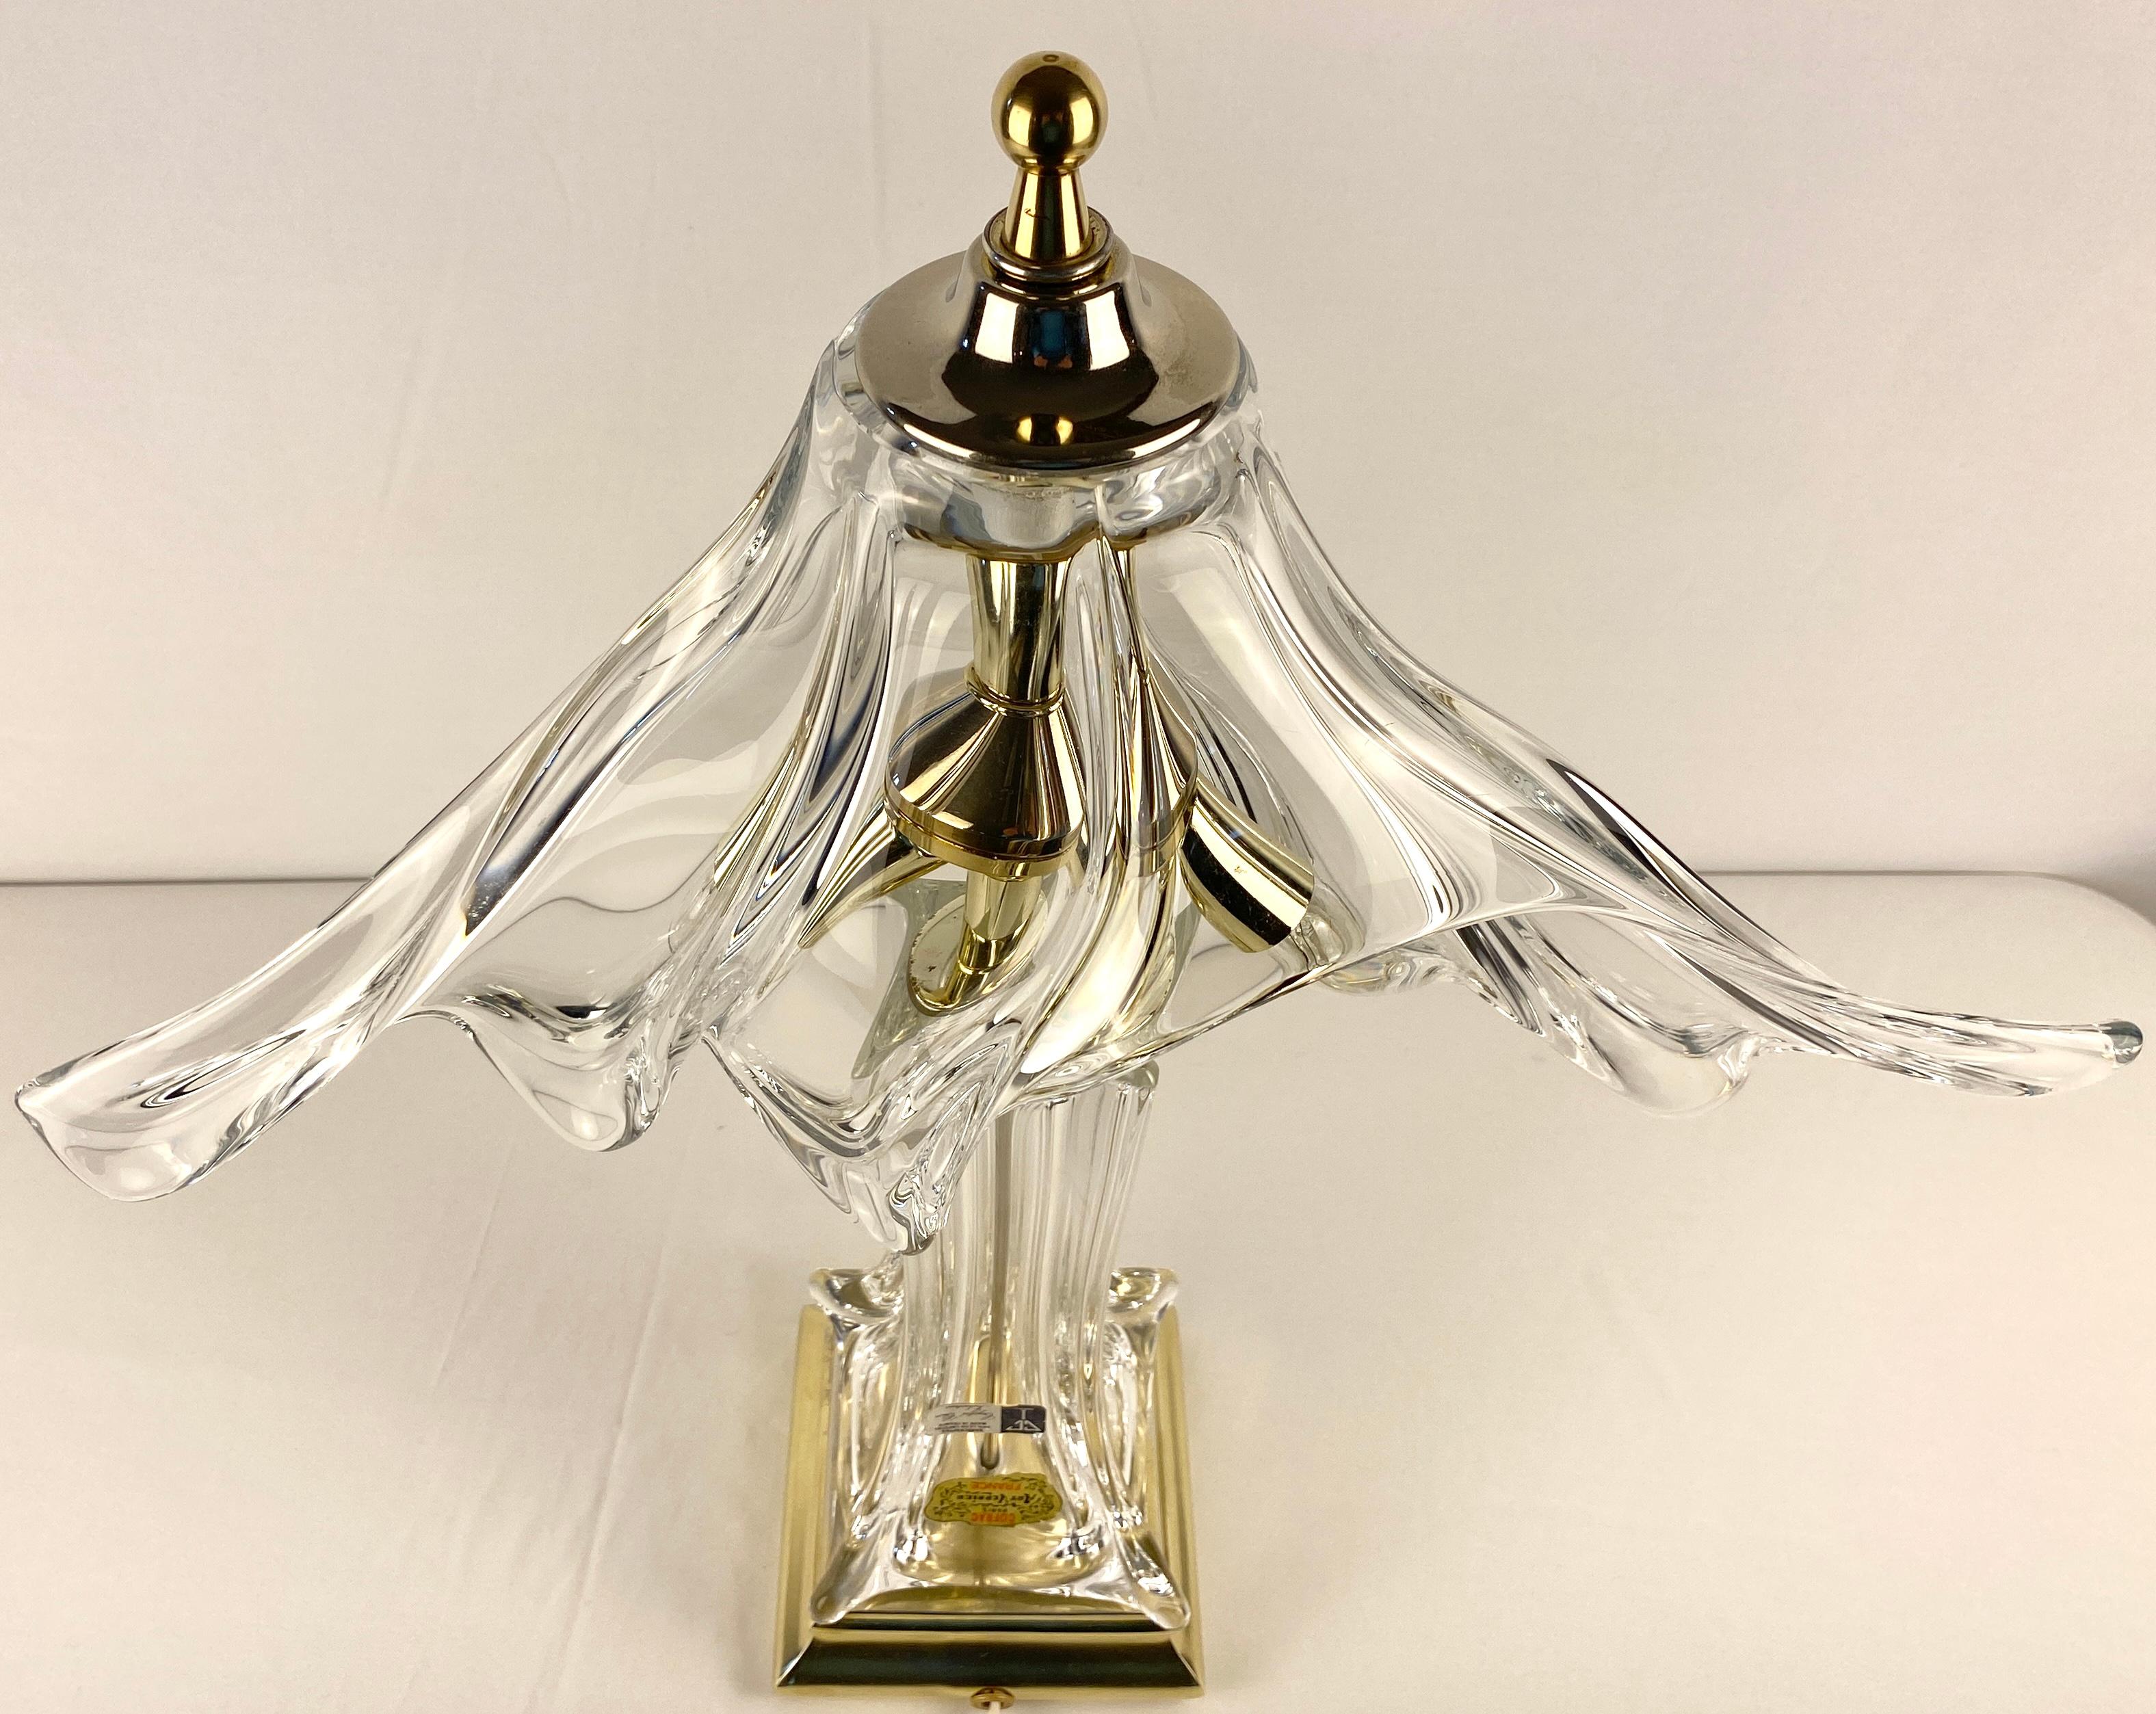 Très belle lampe de table de style Art Déco en cristal soufflé de forme unique et en laiton. Cofrac Art Verrier de France. Cette pièce porte la marque du fabricant. Cofrac utilisait des labels pour identifier ses pièces qui étaient généralement